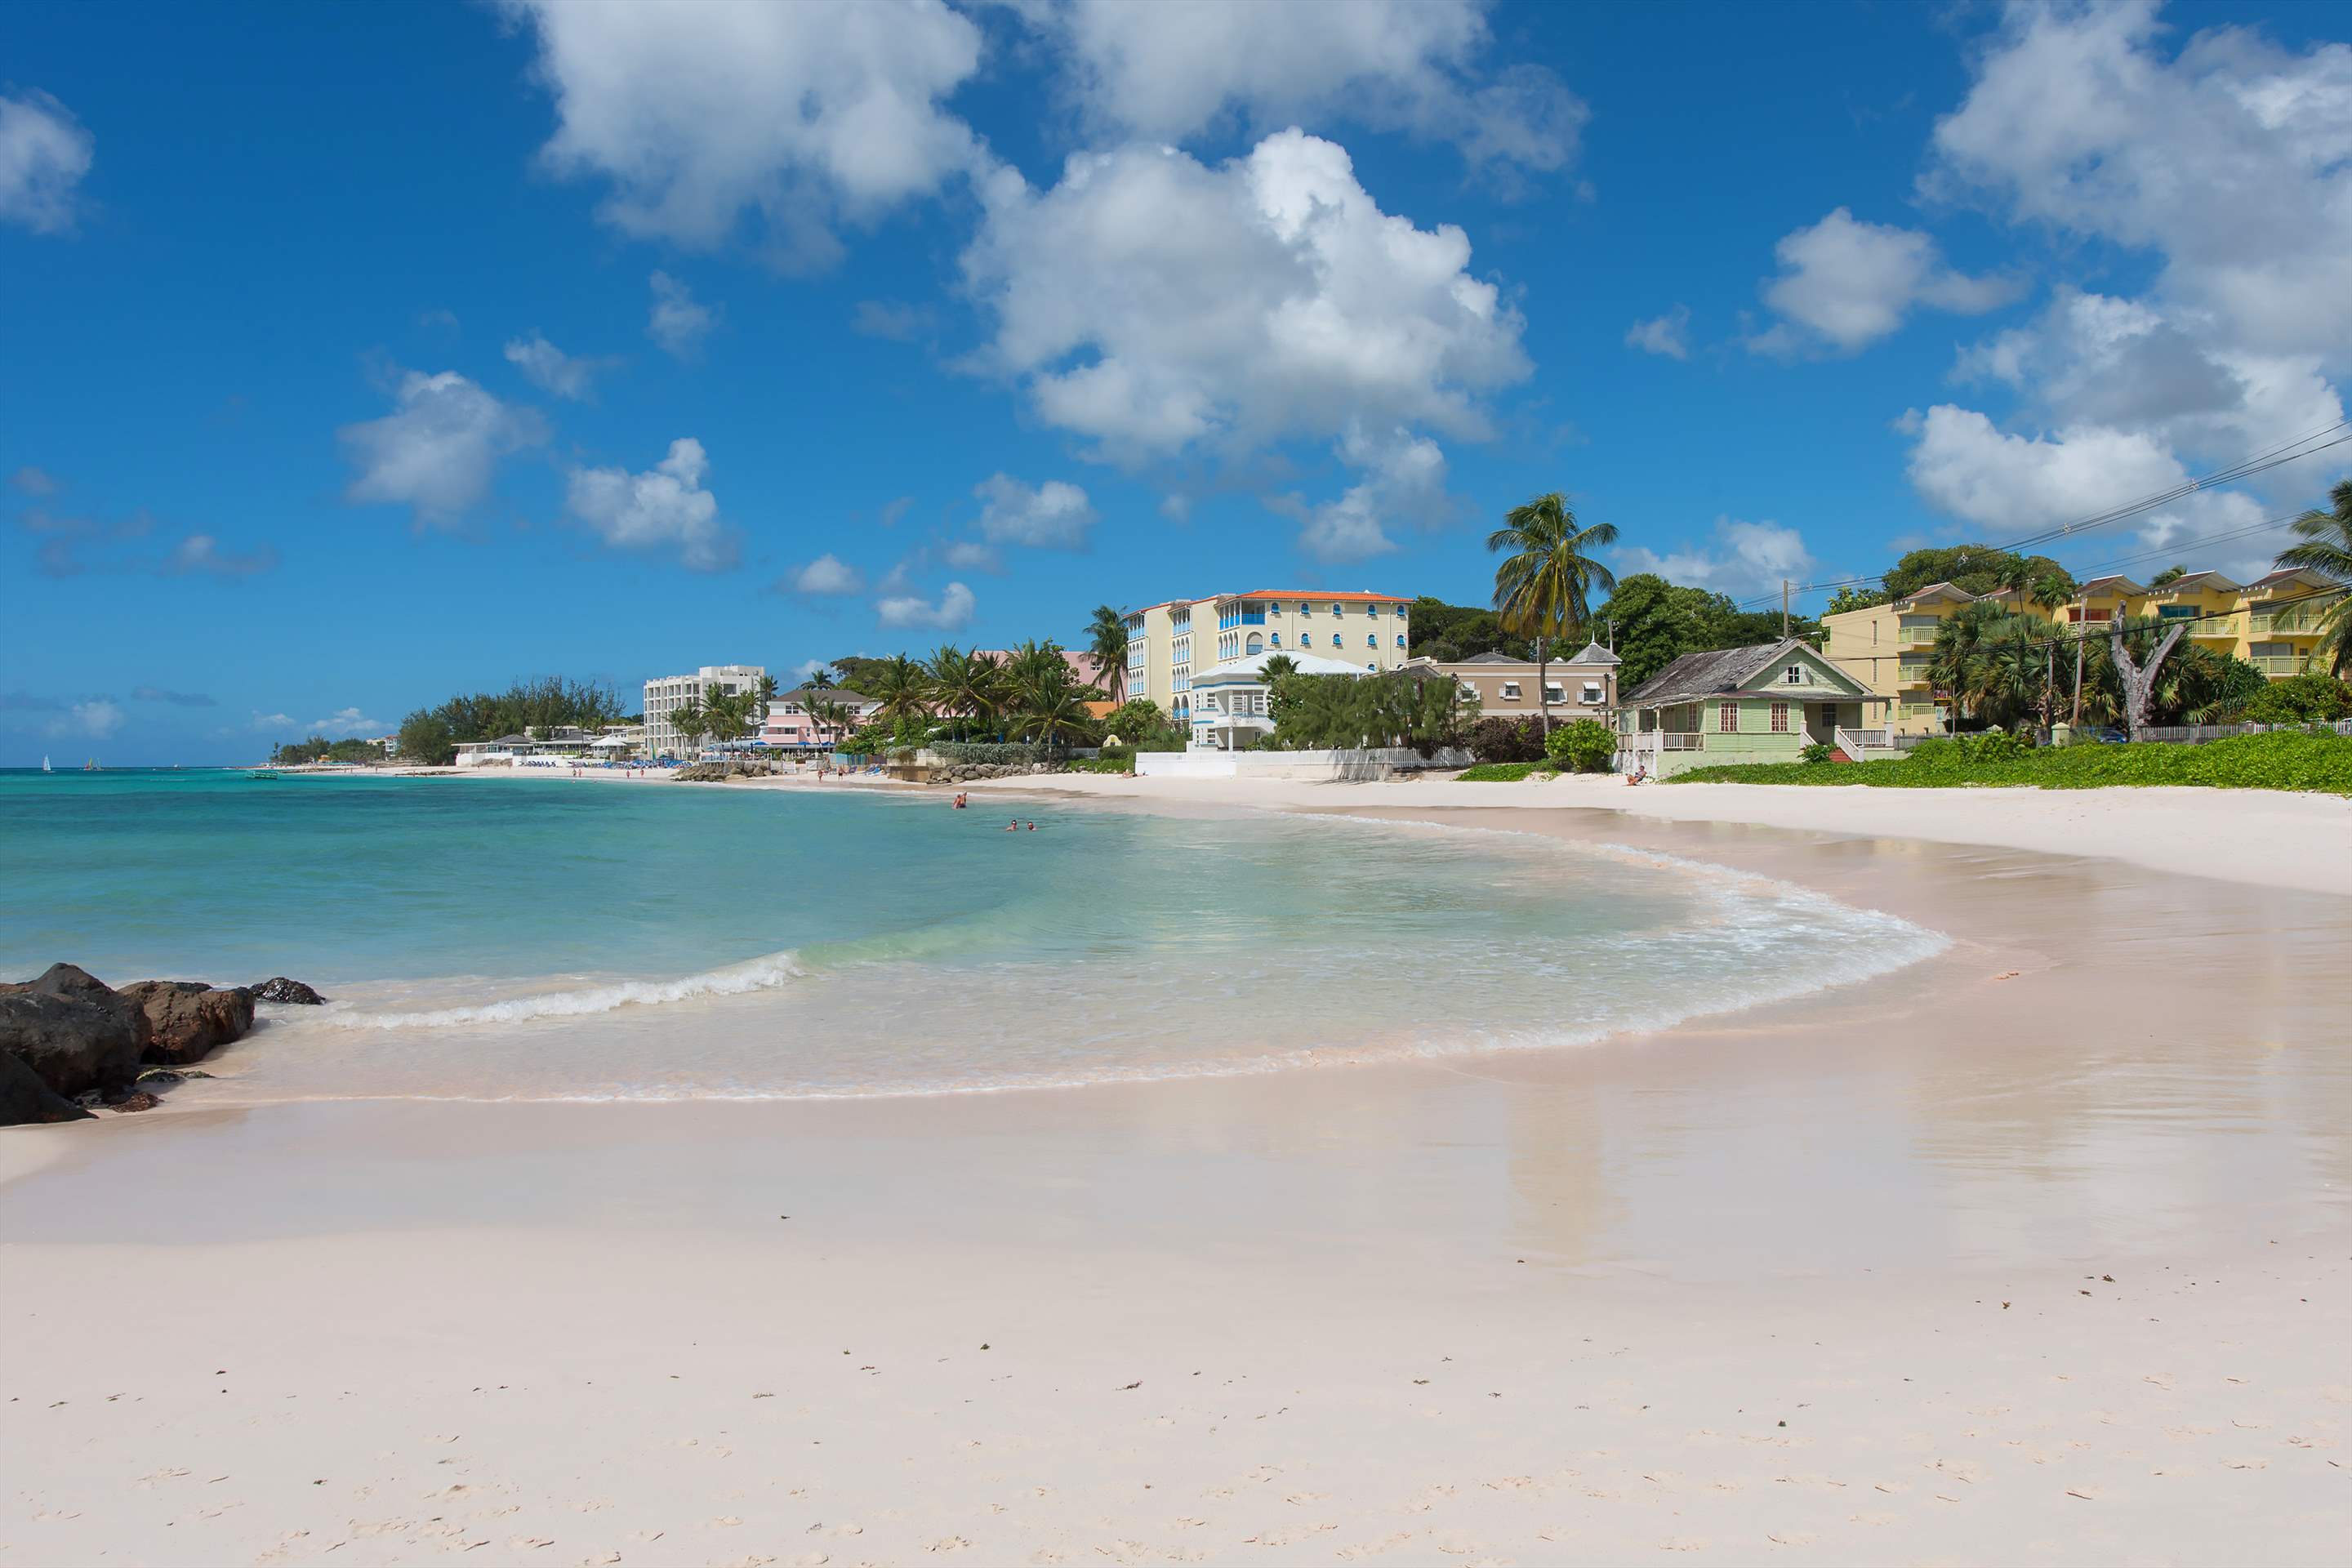 Maxwell Beach Villas 503, 2 bedroom, 2 bedroom villa in St. Lawrence Gap & South Coast, Barbados Photo #11